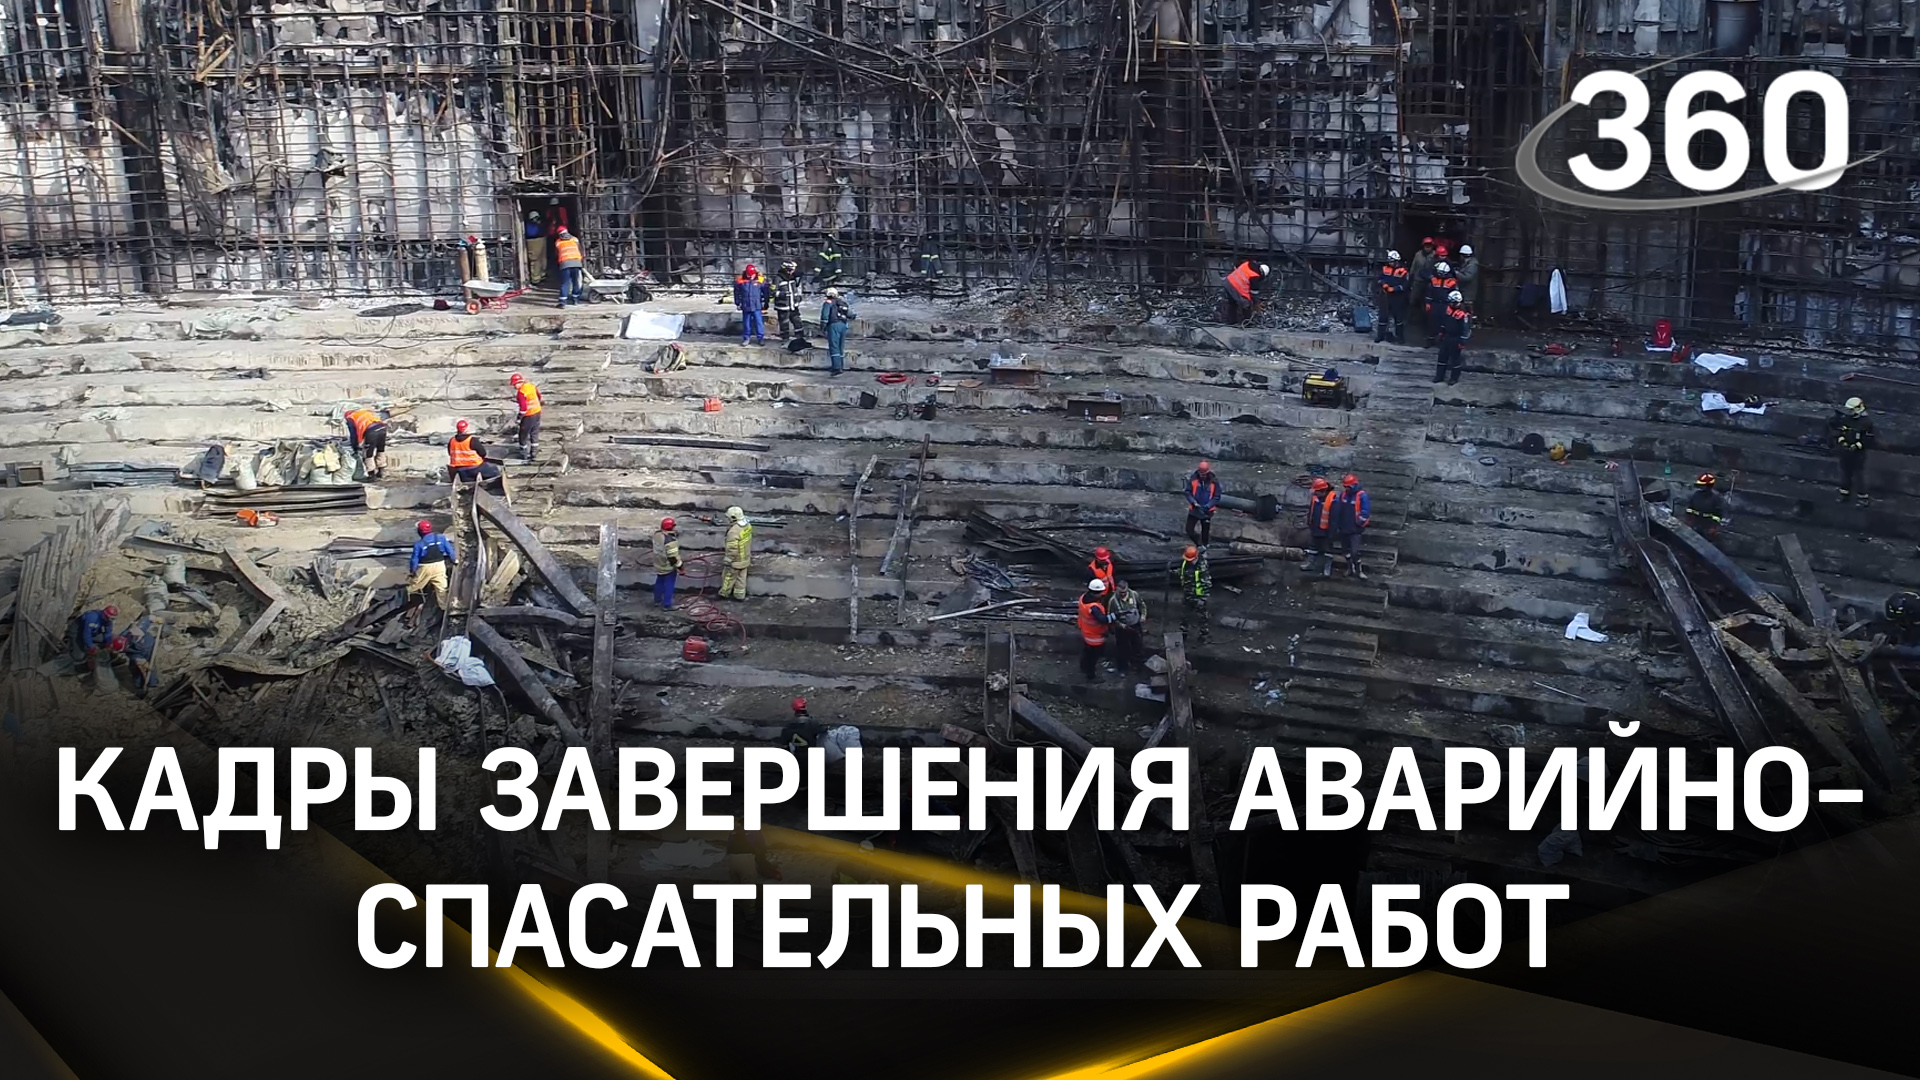 Спасатели МЧС России завершили аварийно-спасательные работы в «Крокус Сити Холле»